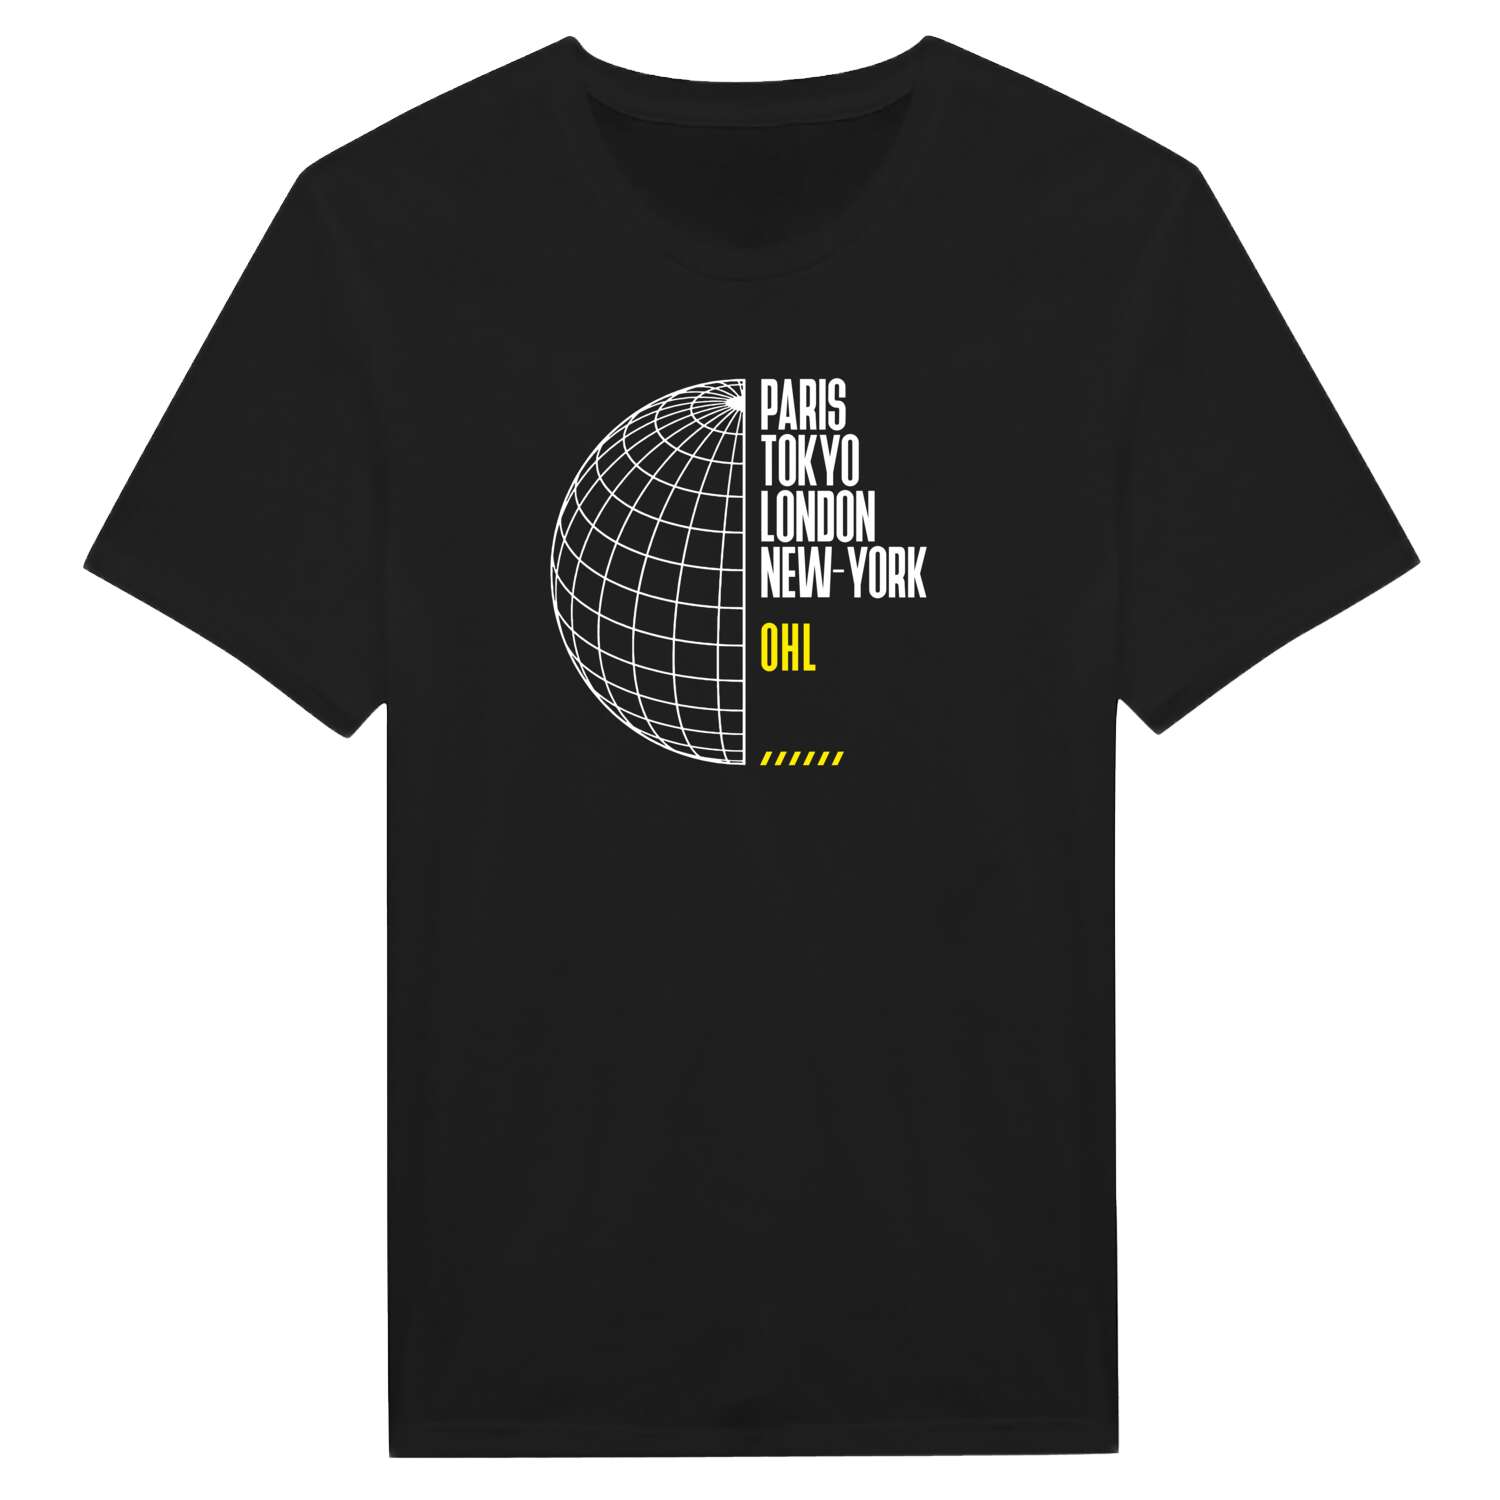 Ohl T-Shirt »Paris Tokyo London«